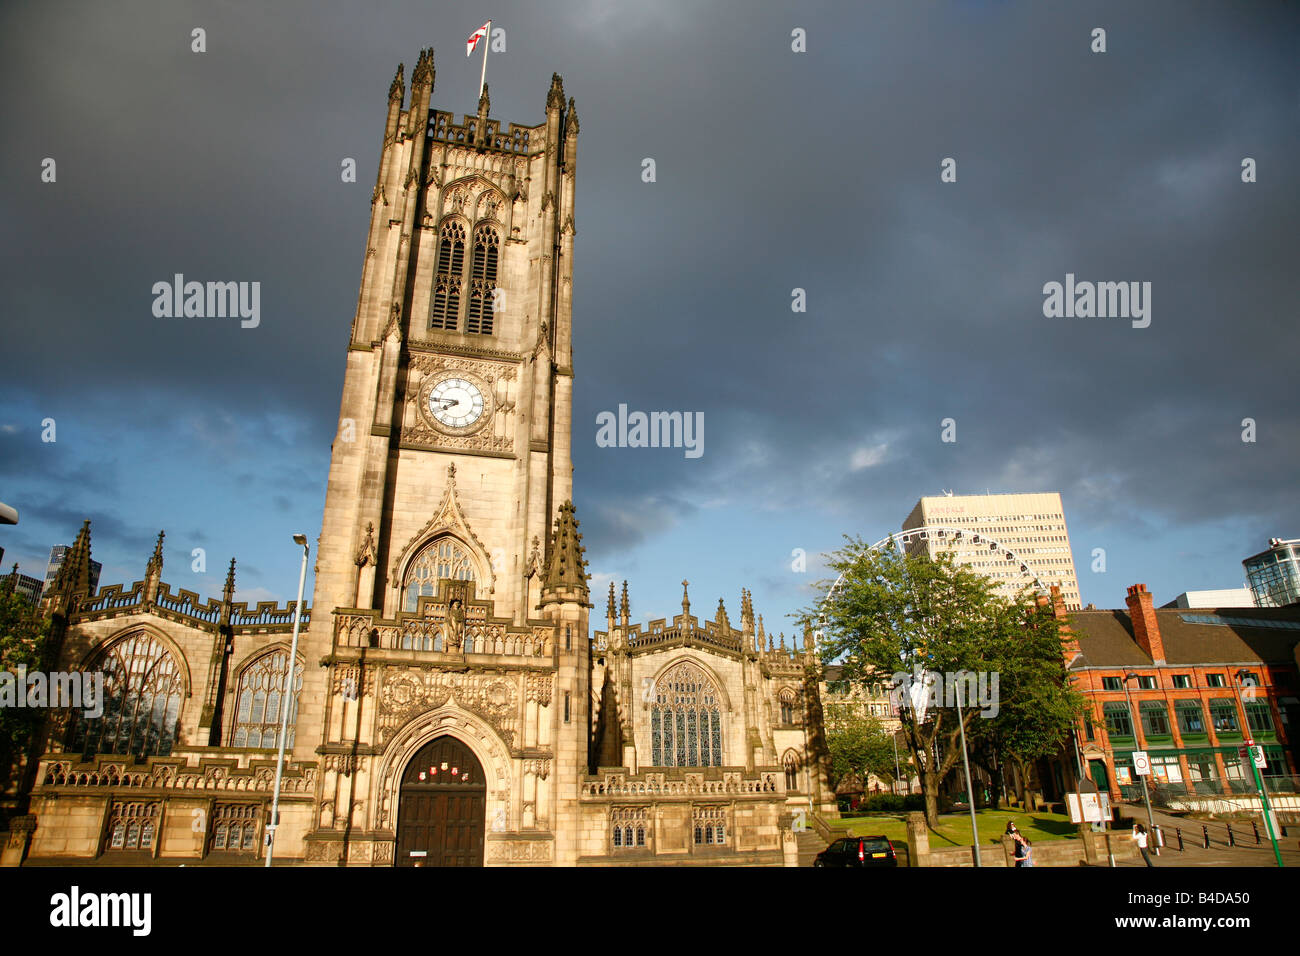 Août 2008 - La Cathédrale de Manchester Manchester England UK Banque D'Images